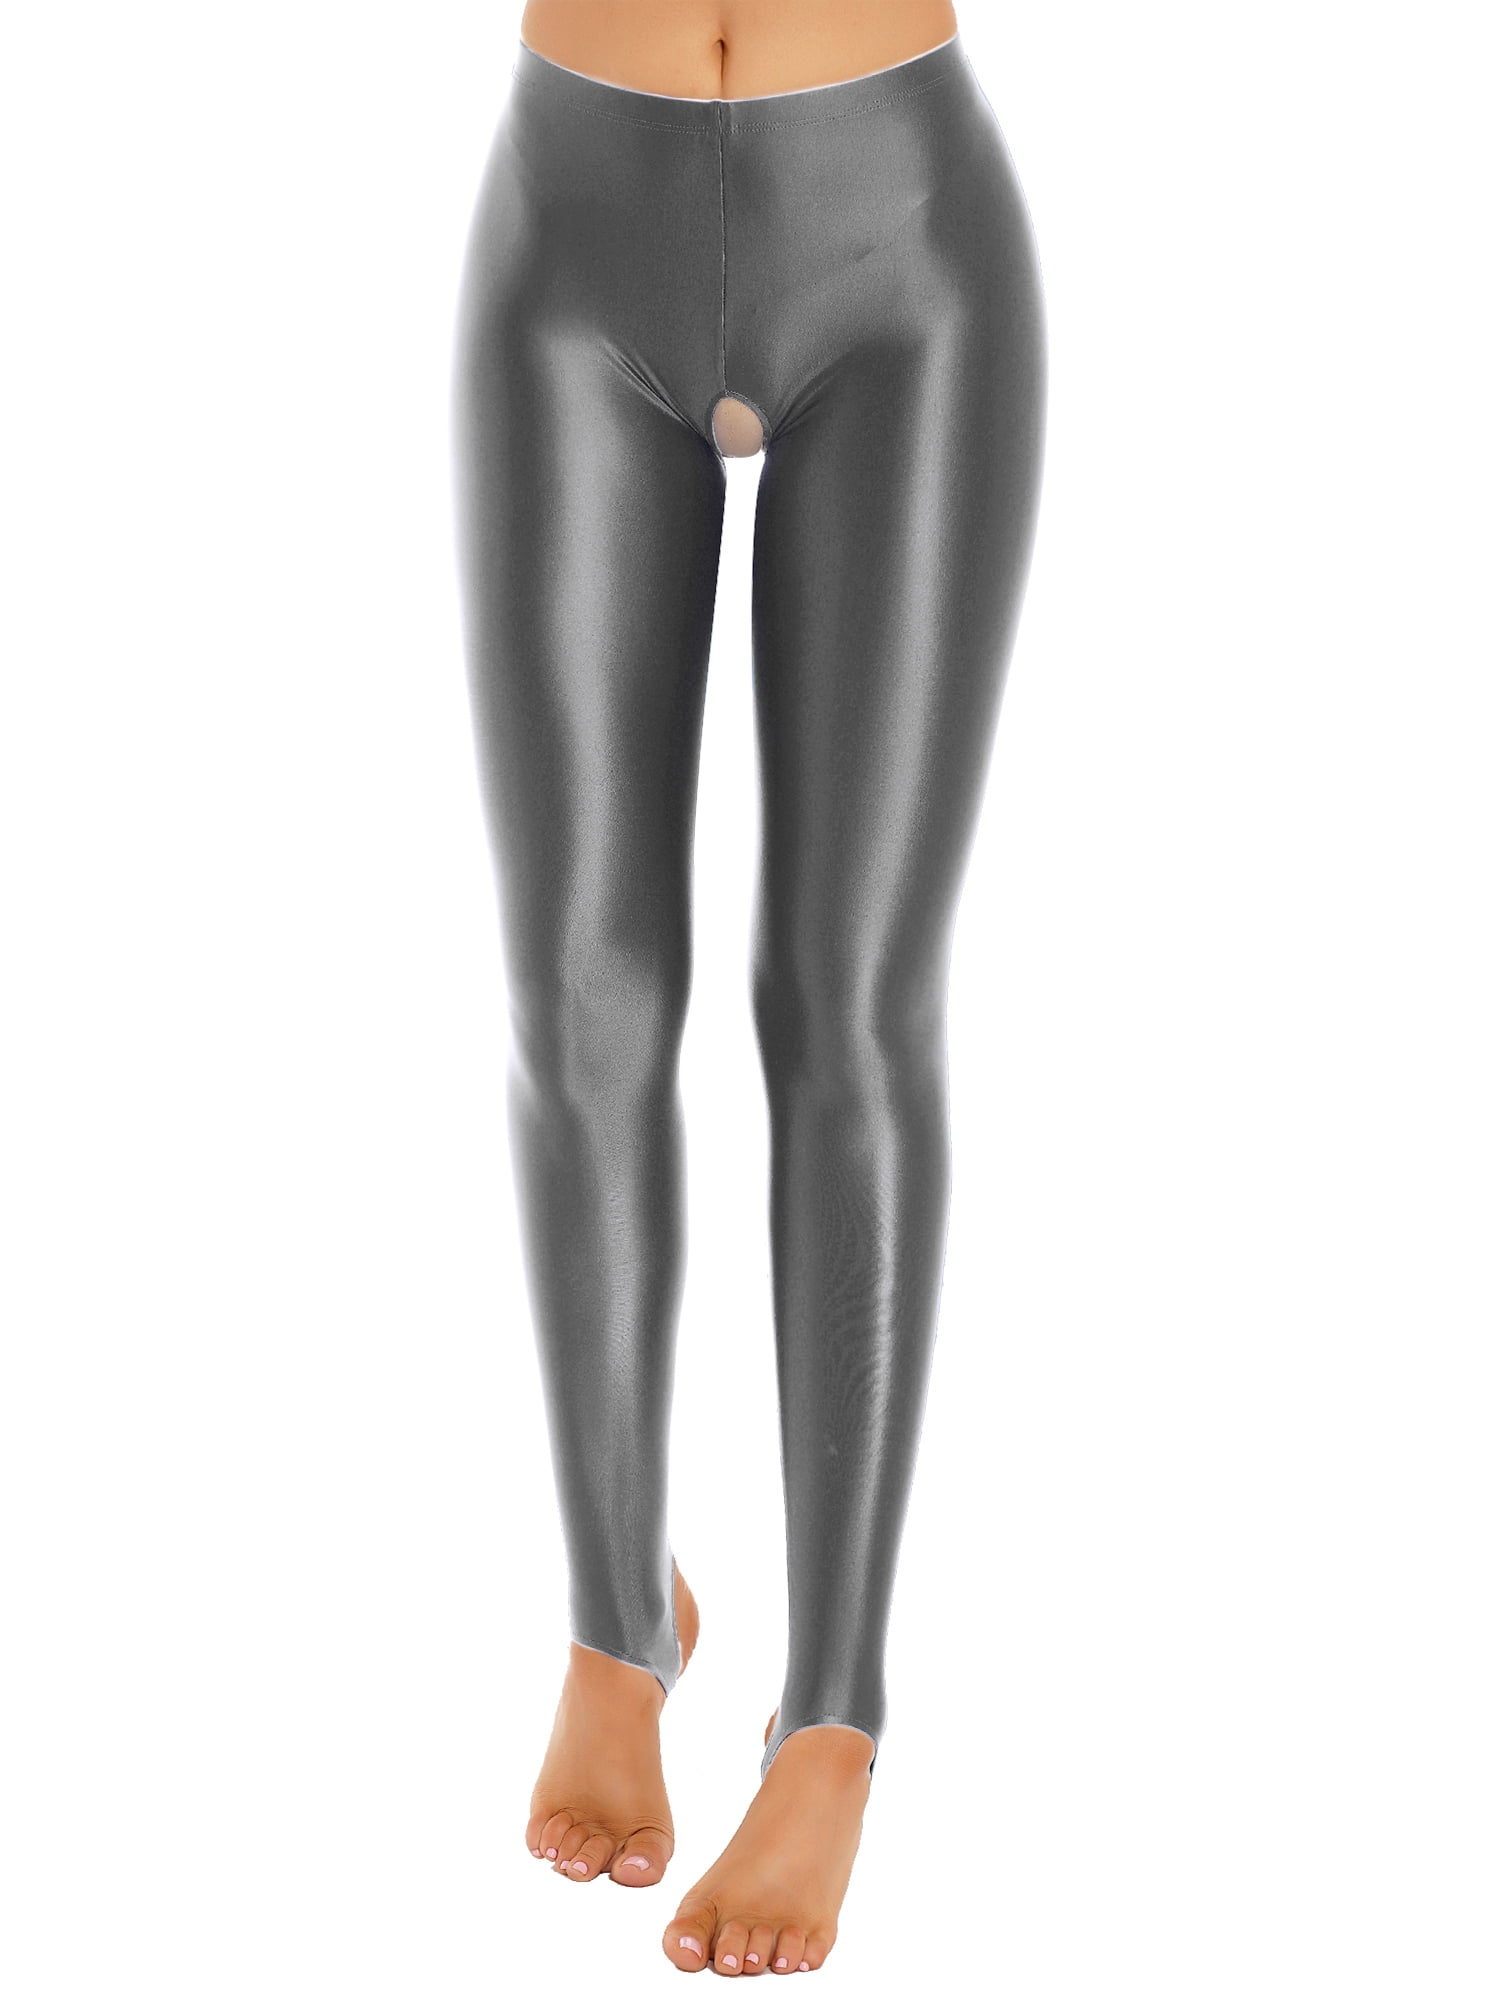 iEFiEL Womens Crotchless Stirrup Tights Glossy Yoga Sports Leggings  Nightwear Black XL 